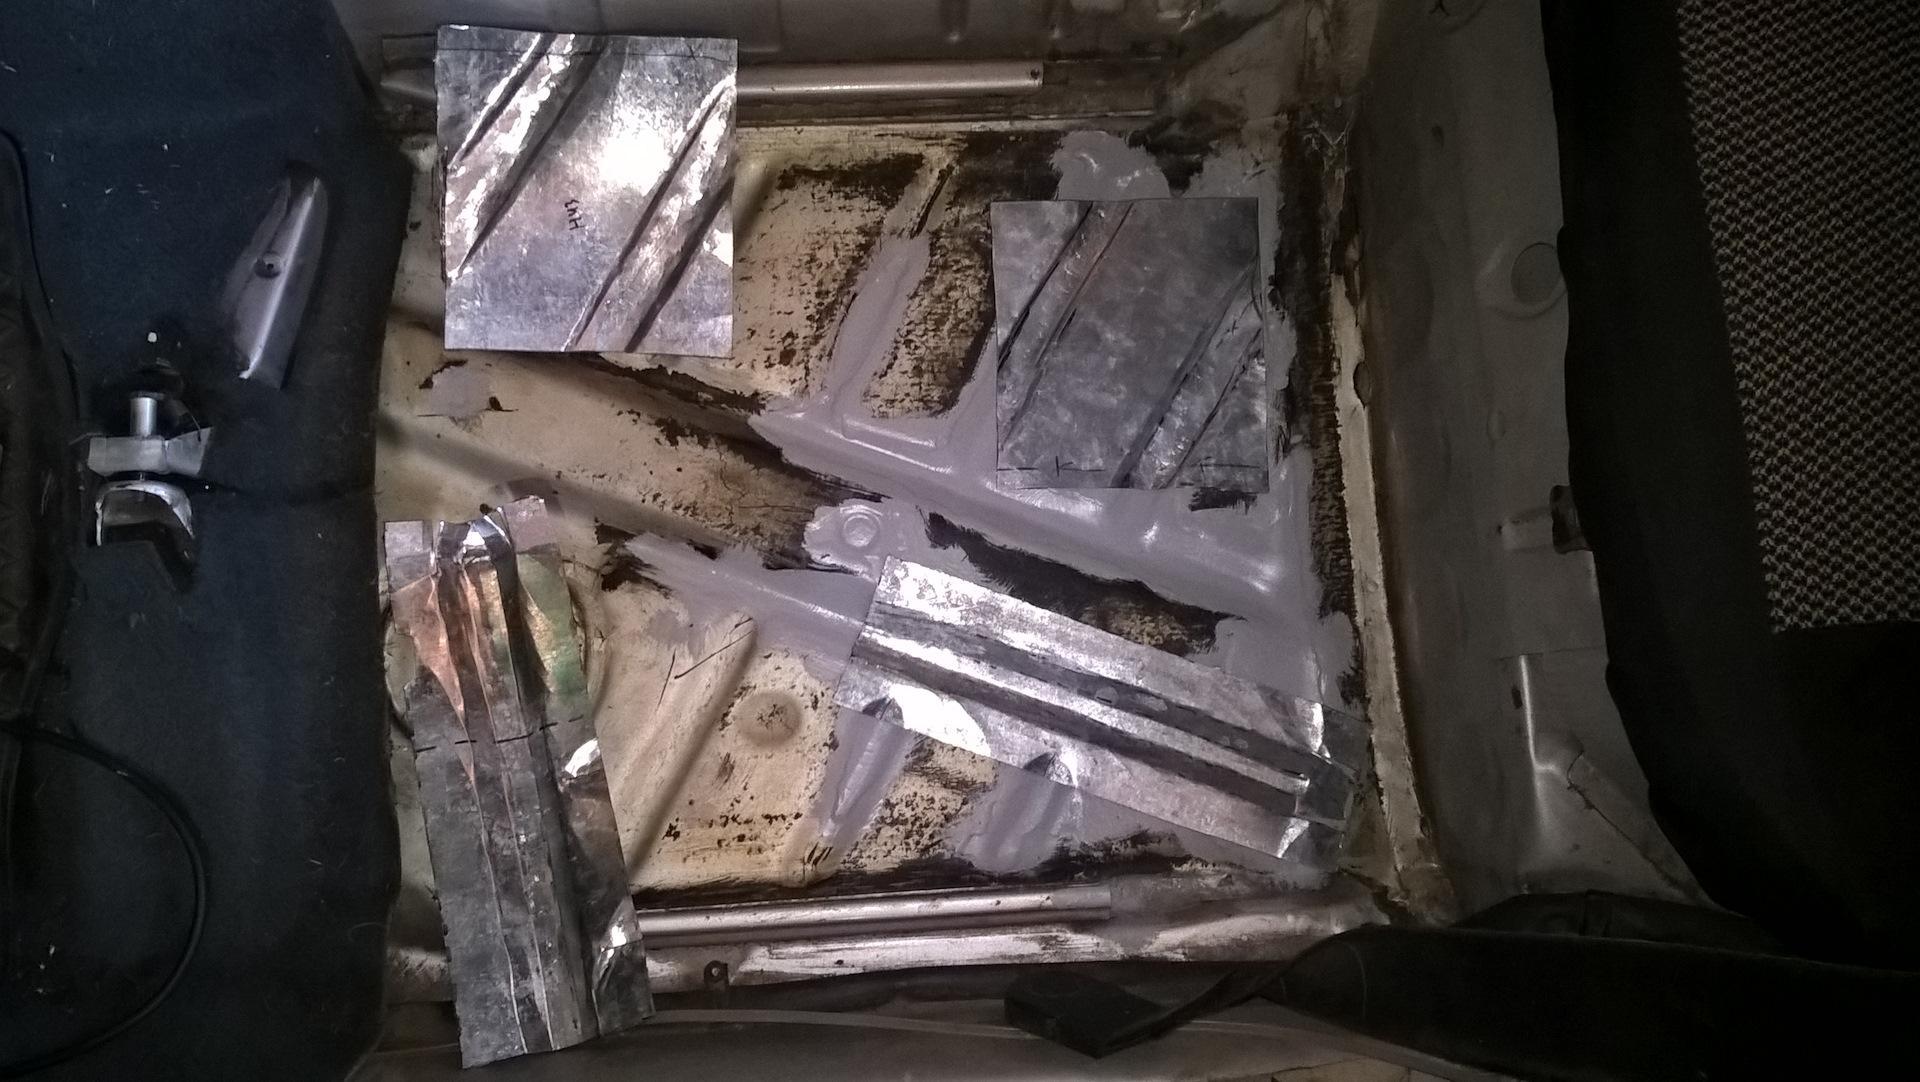 Galvanized body welding: nzira yekubika, mhando dzewelding